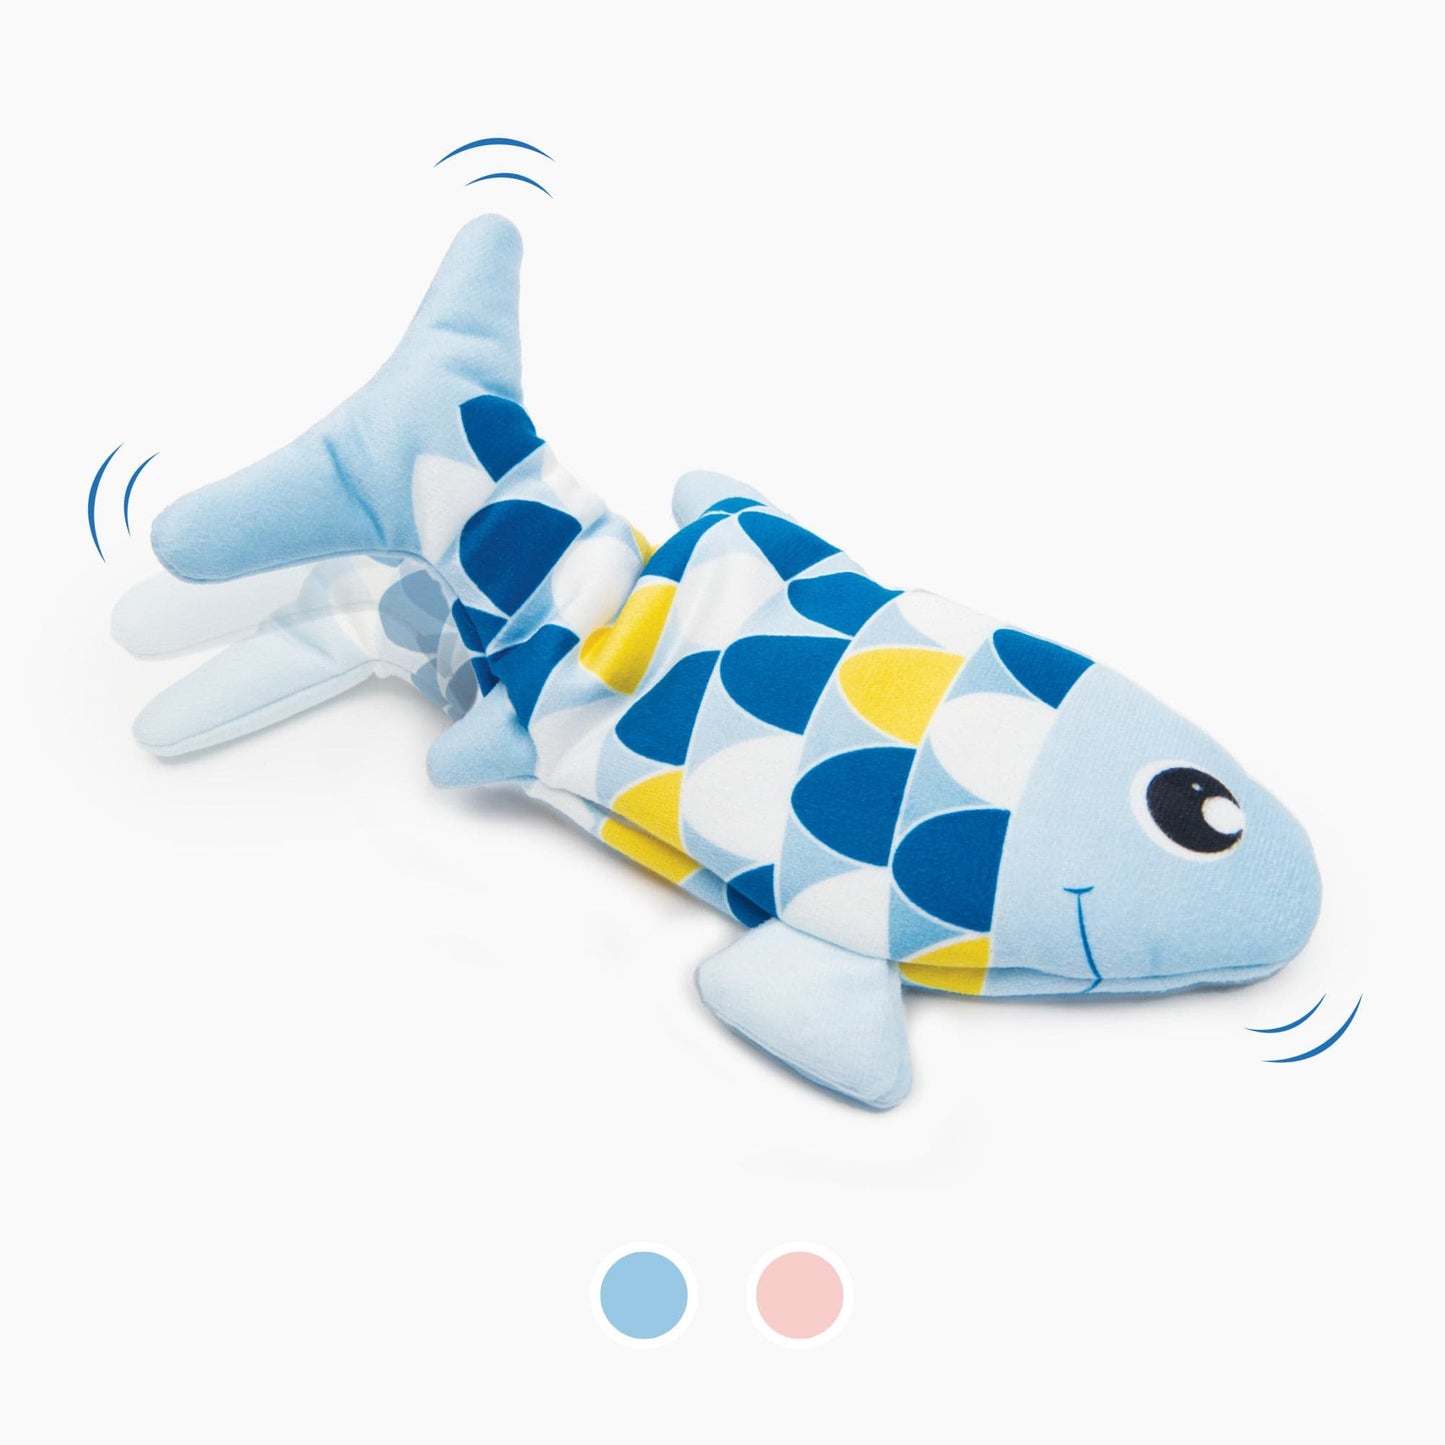 Catit Groovy Fish ─ Blau